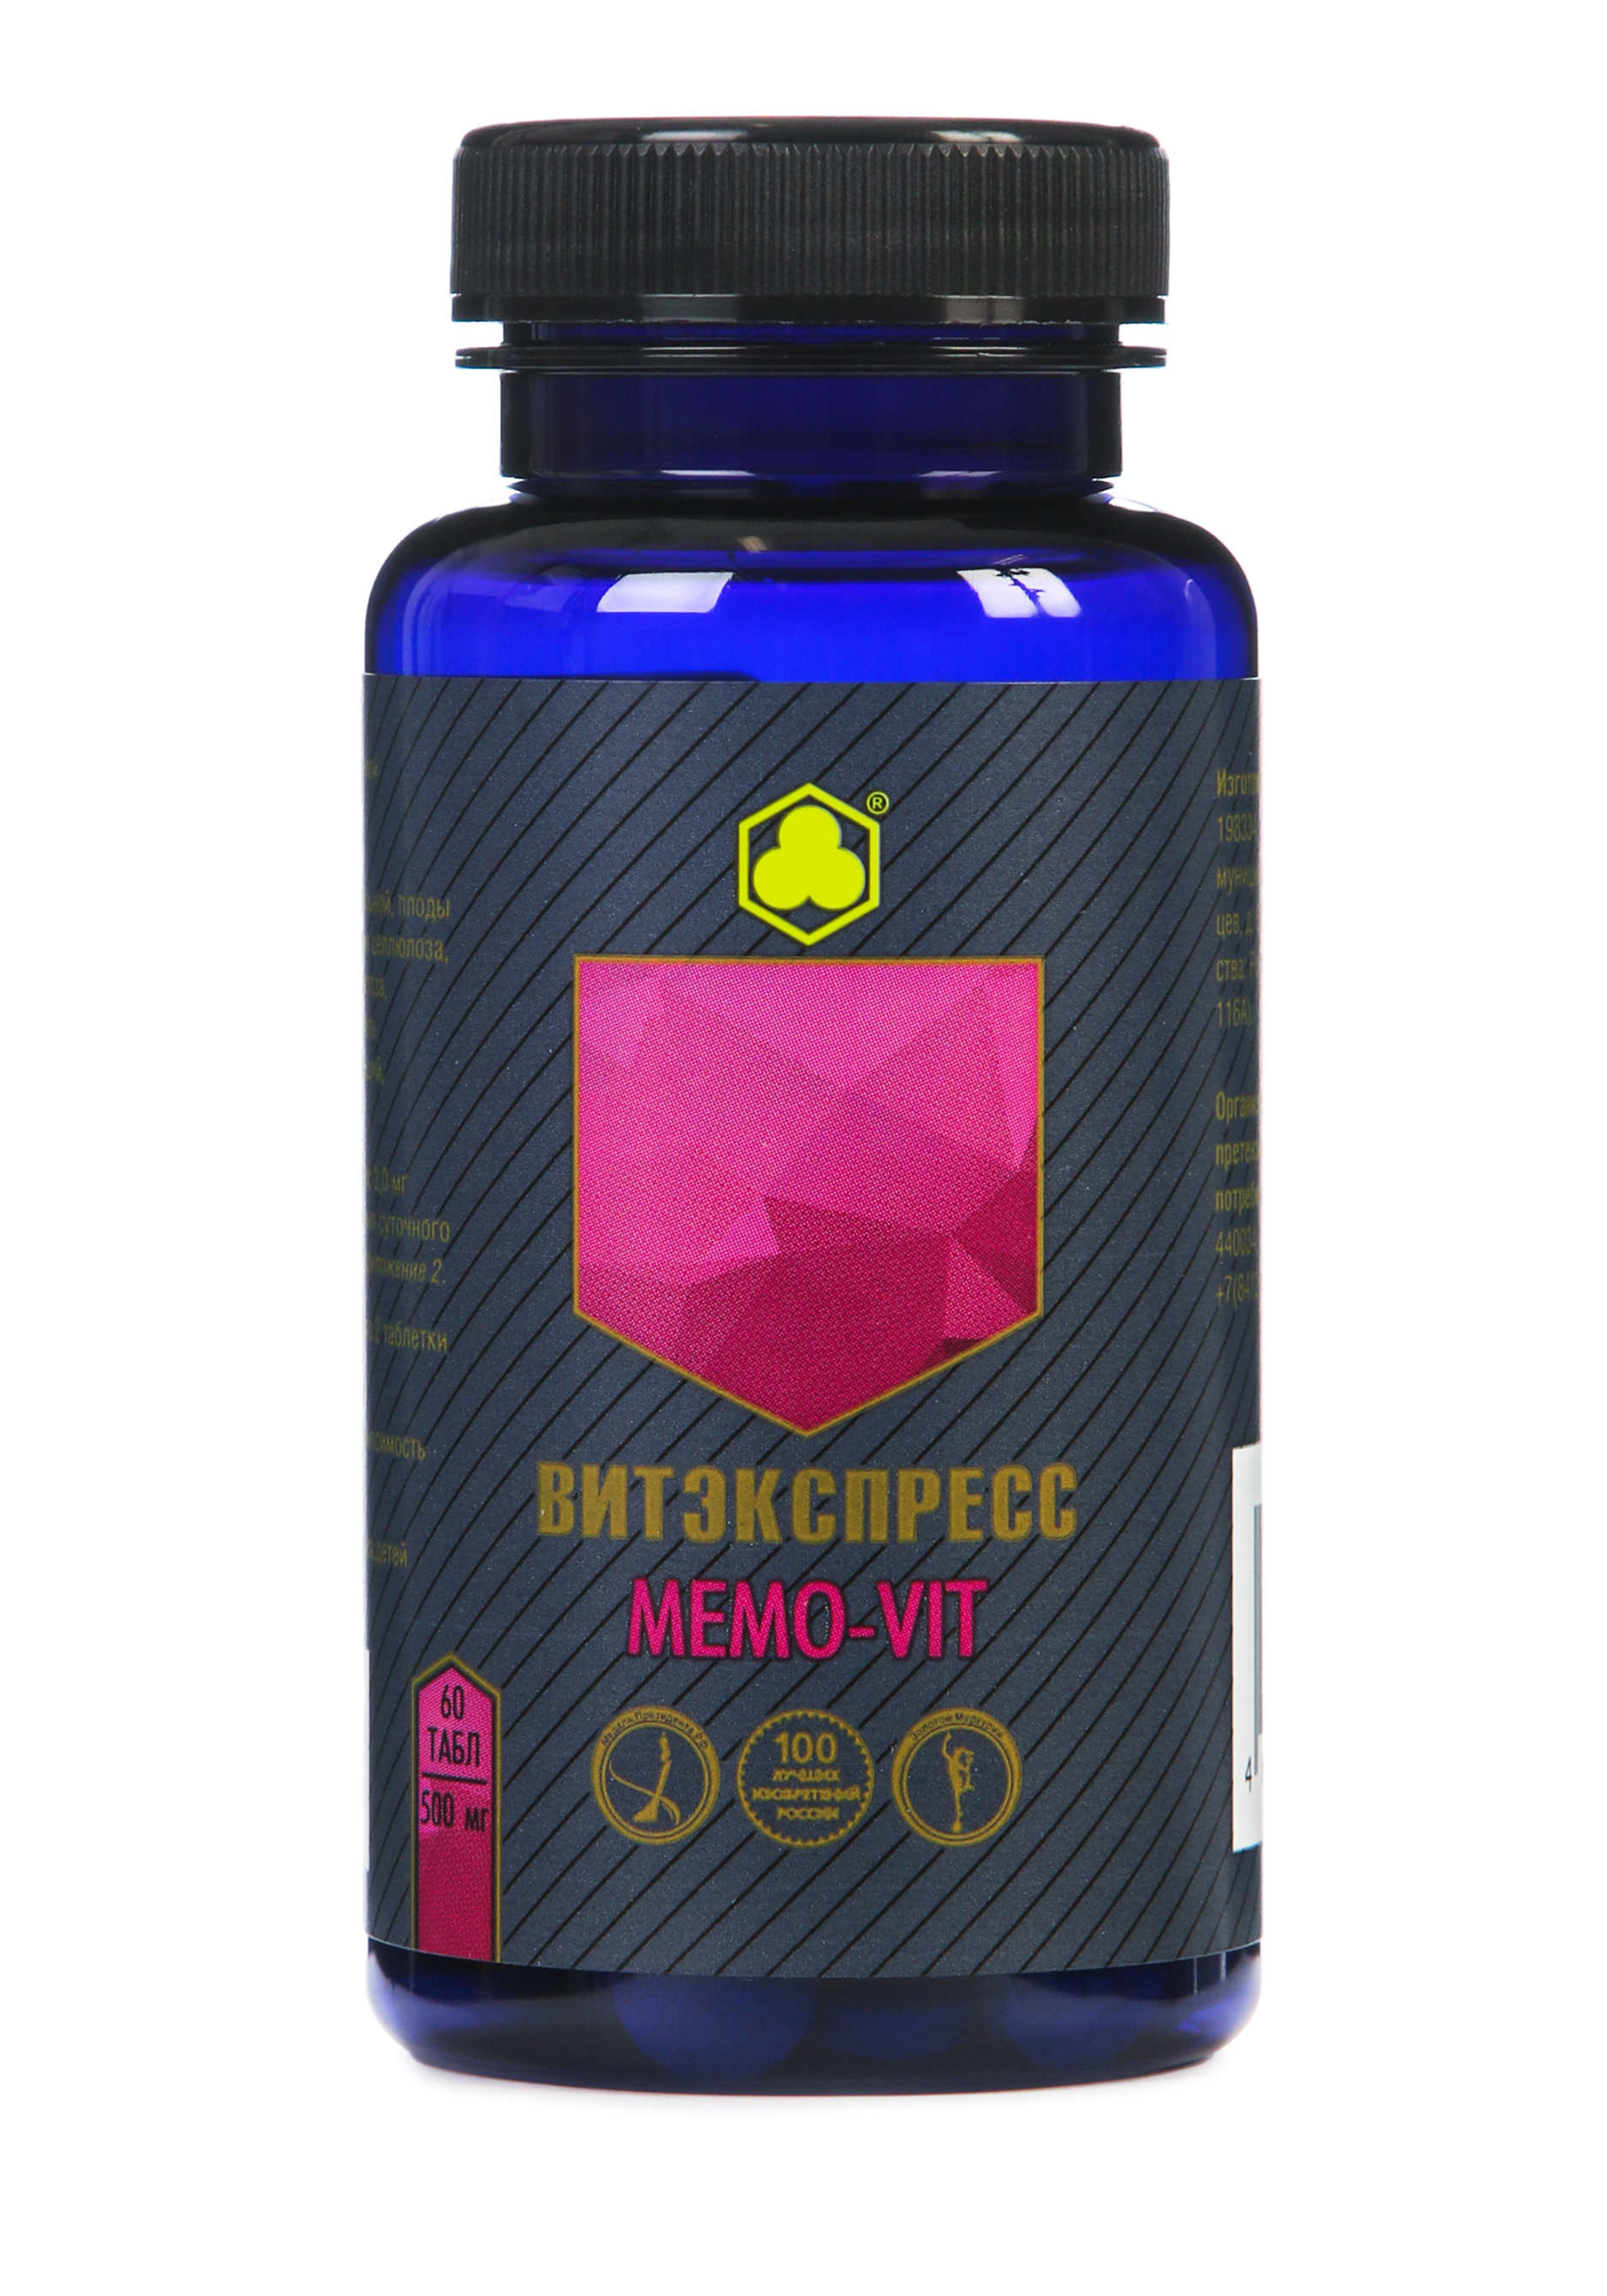 Органик-комплекс Memo-vit aquayer удо ермолаева таблетки 90шт